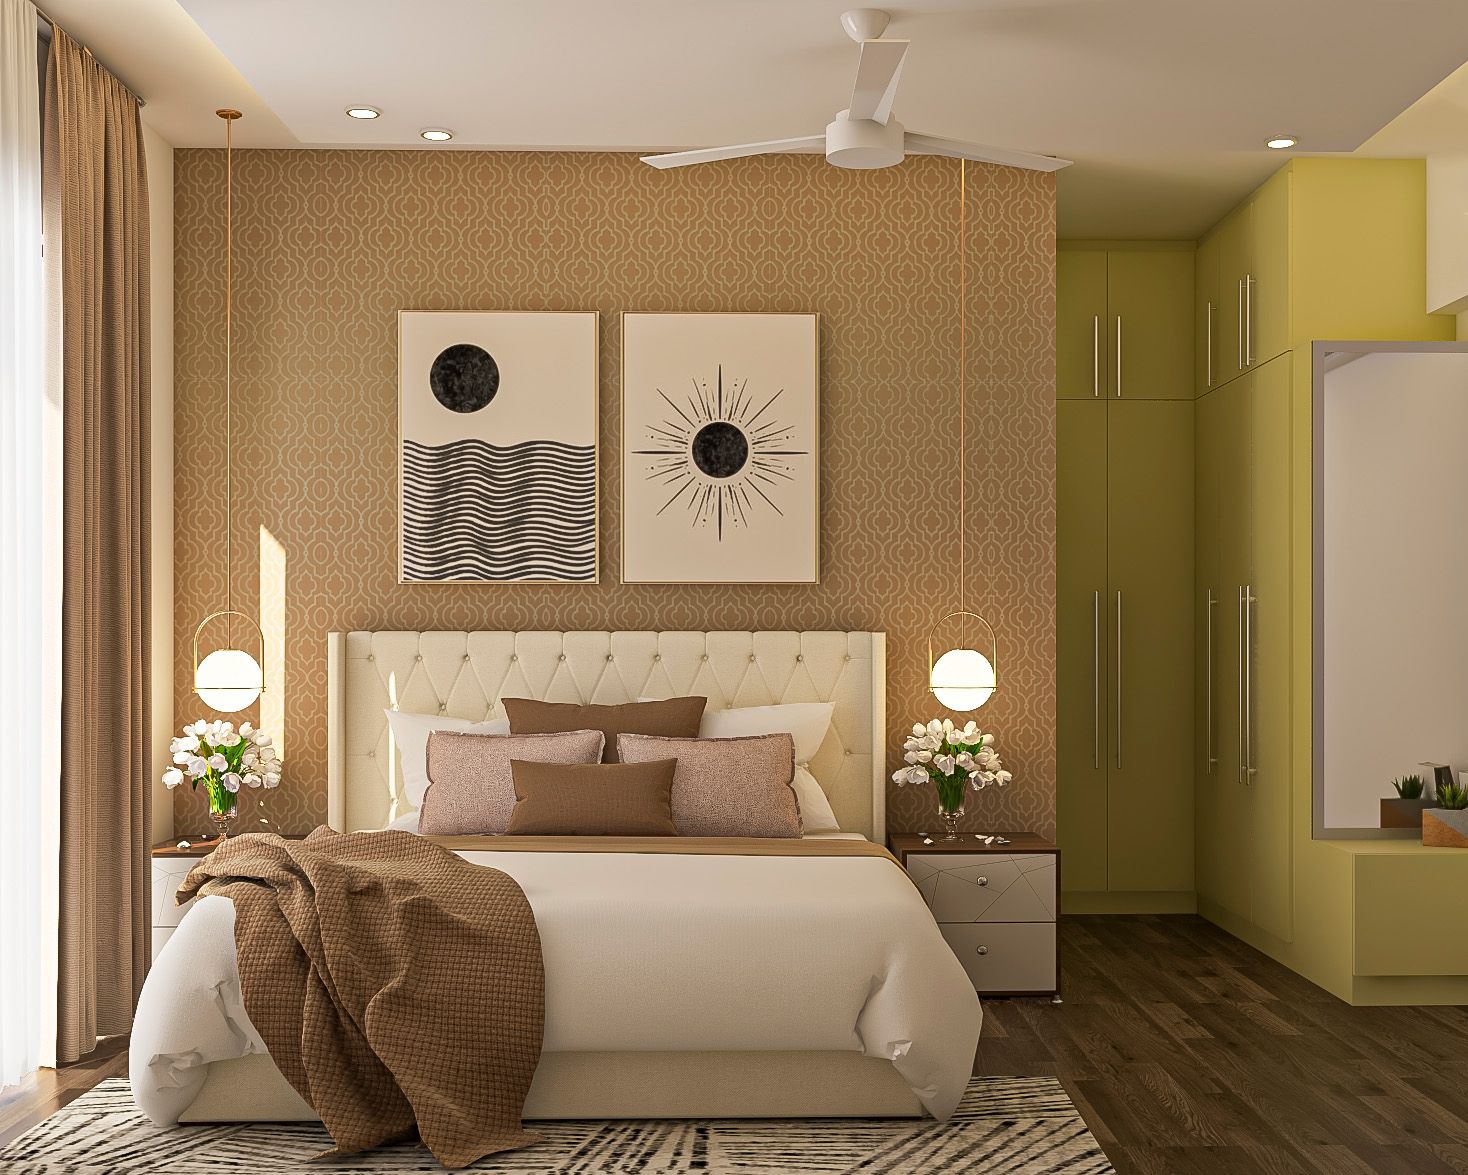 Classic Brown Arabesque Bedroom Wallpaper Design